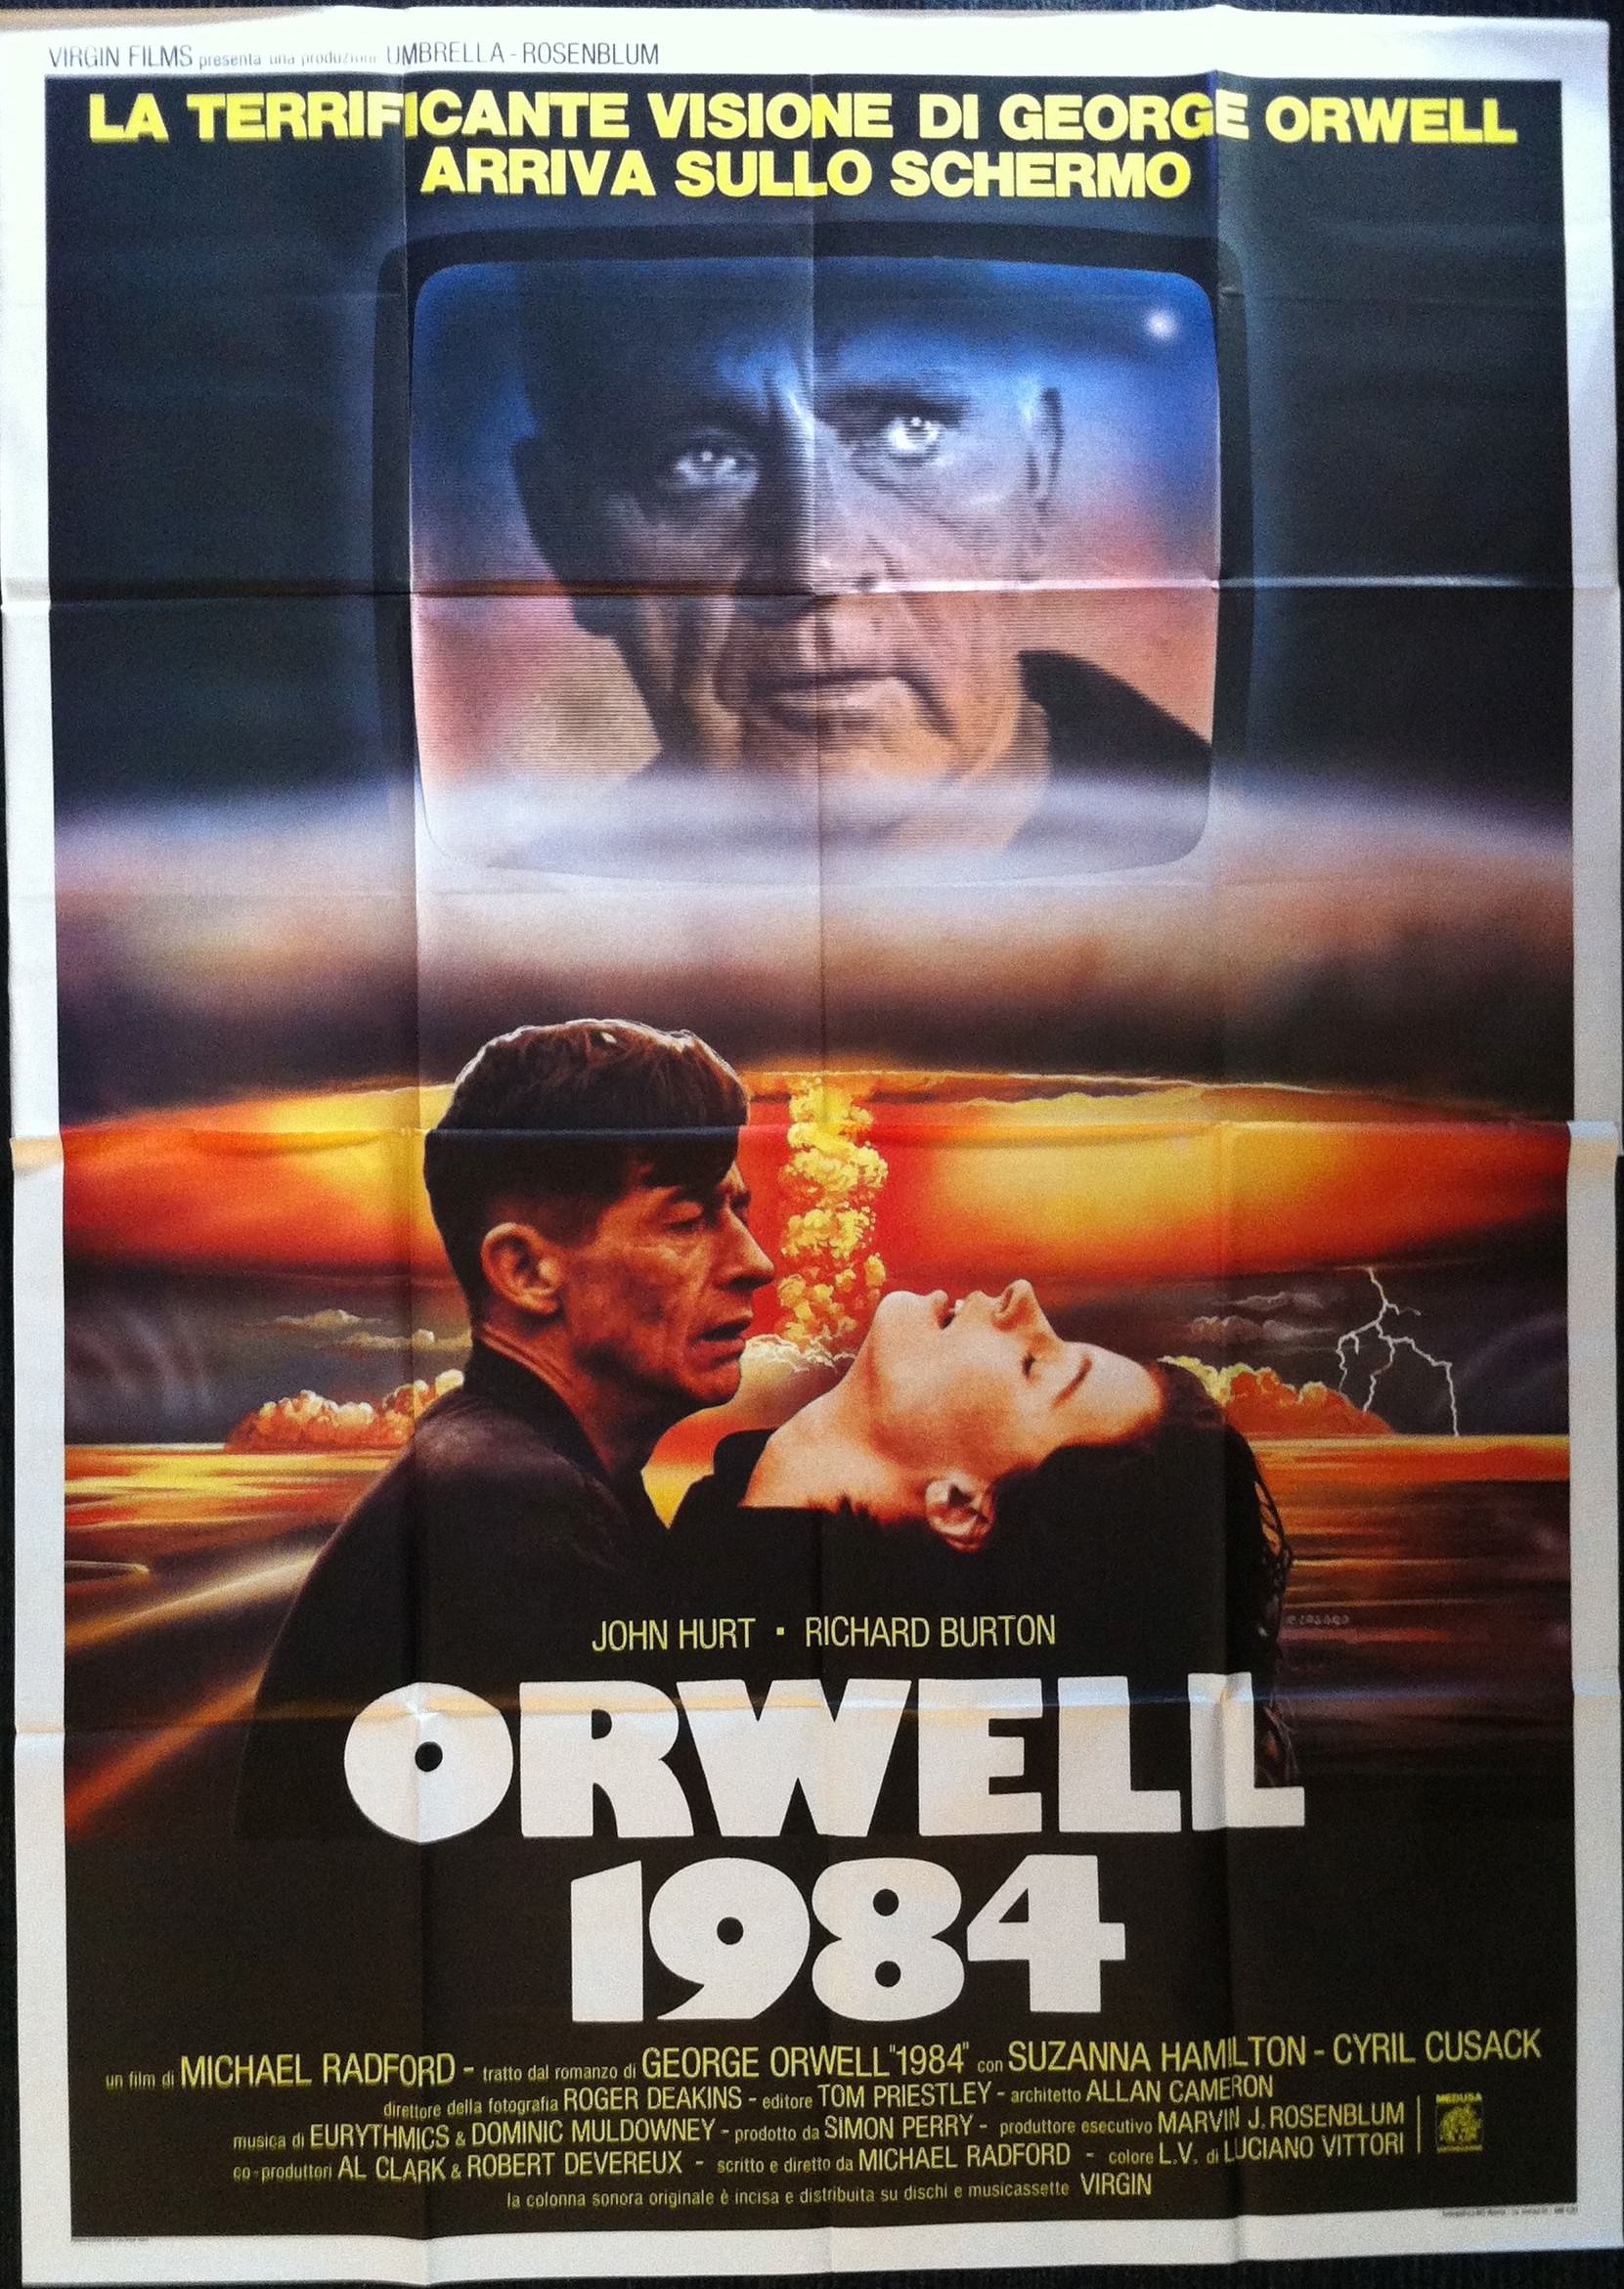 george orwell 1984